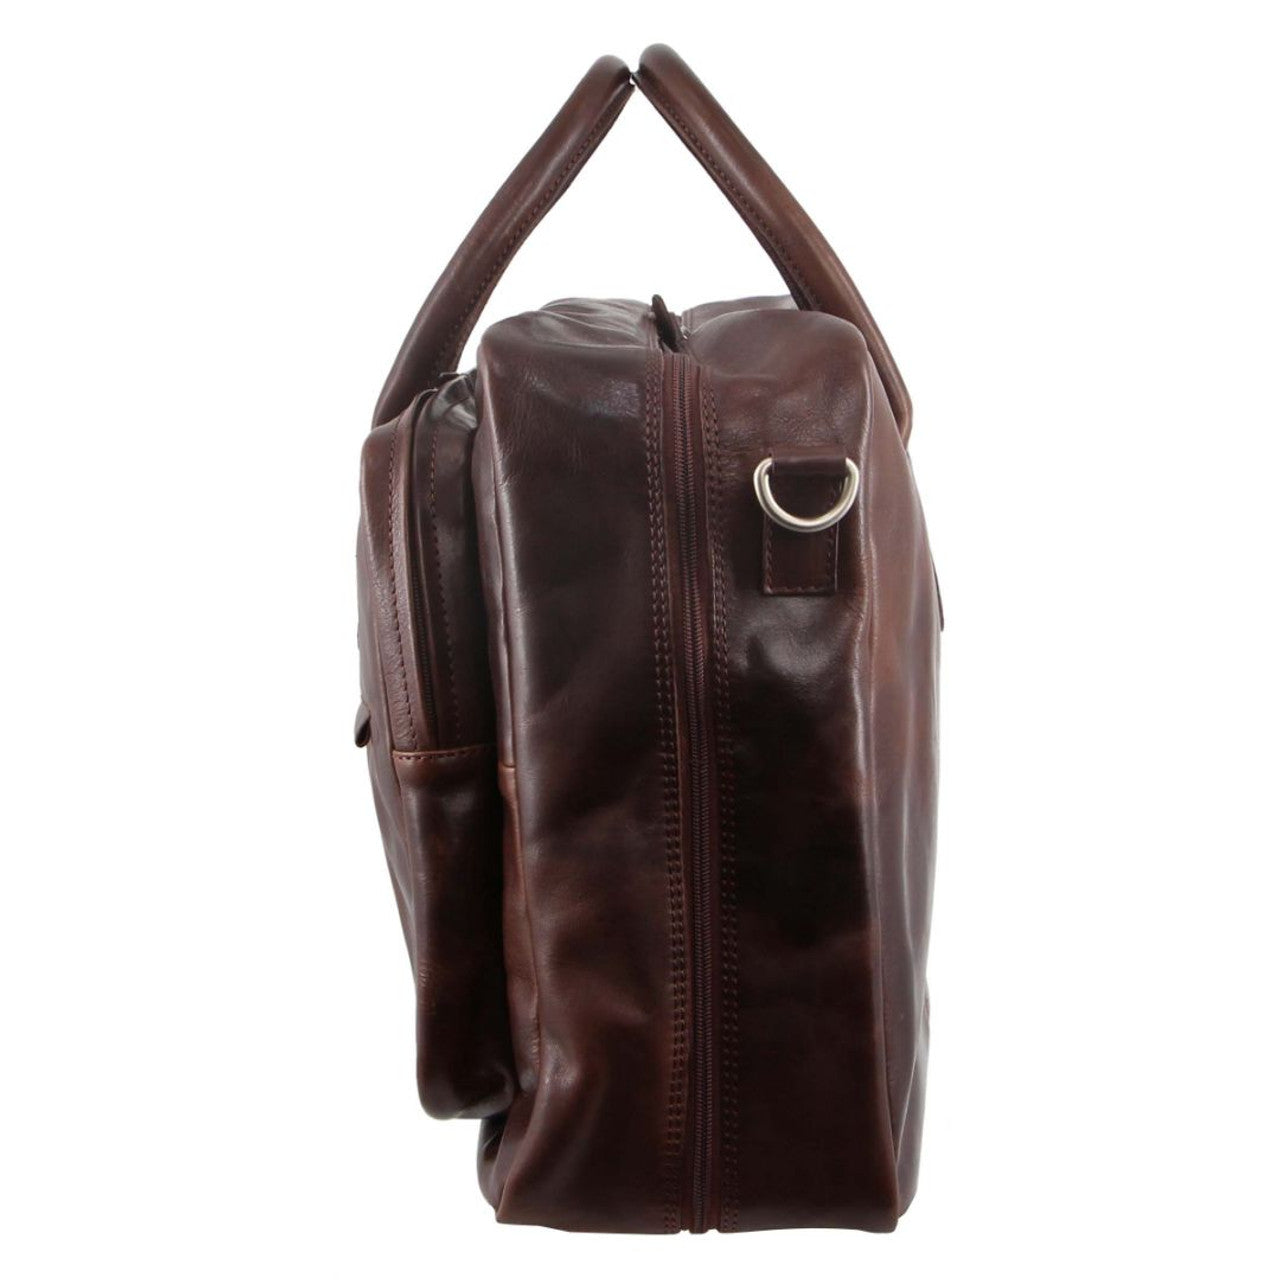 Pierre Cardin Rustic Leather Business/Overnight Bag - 0